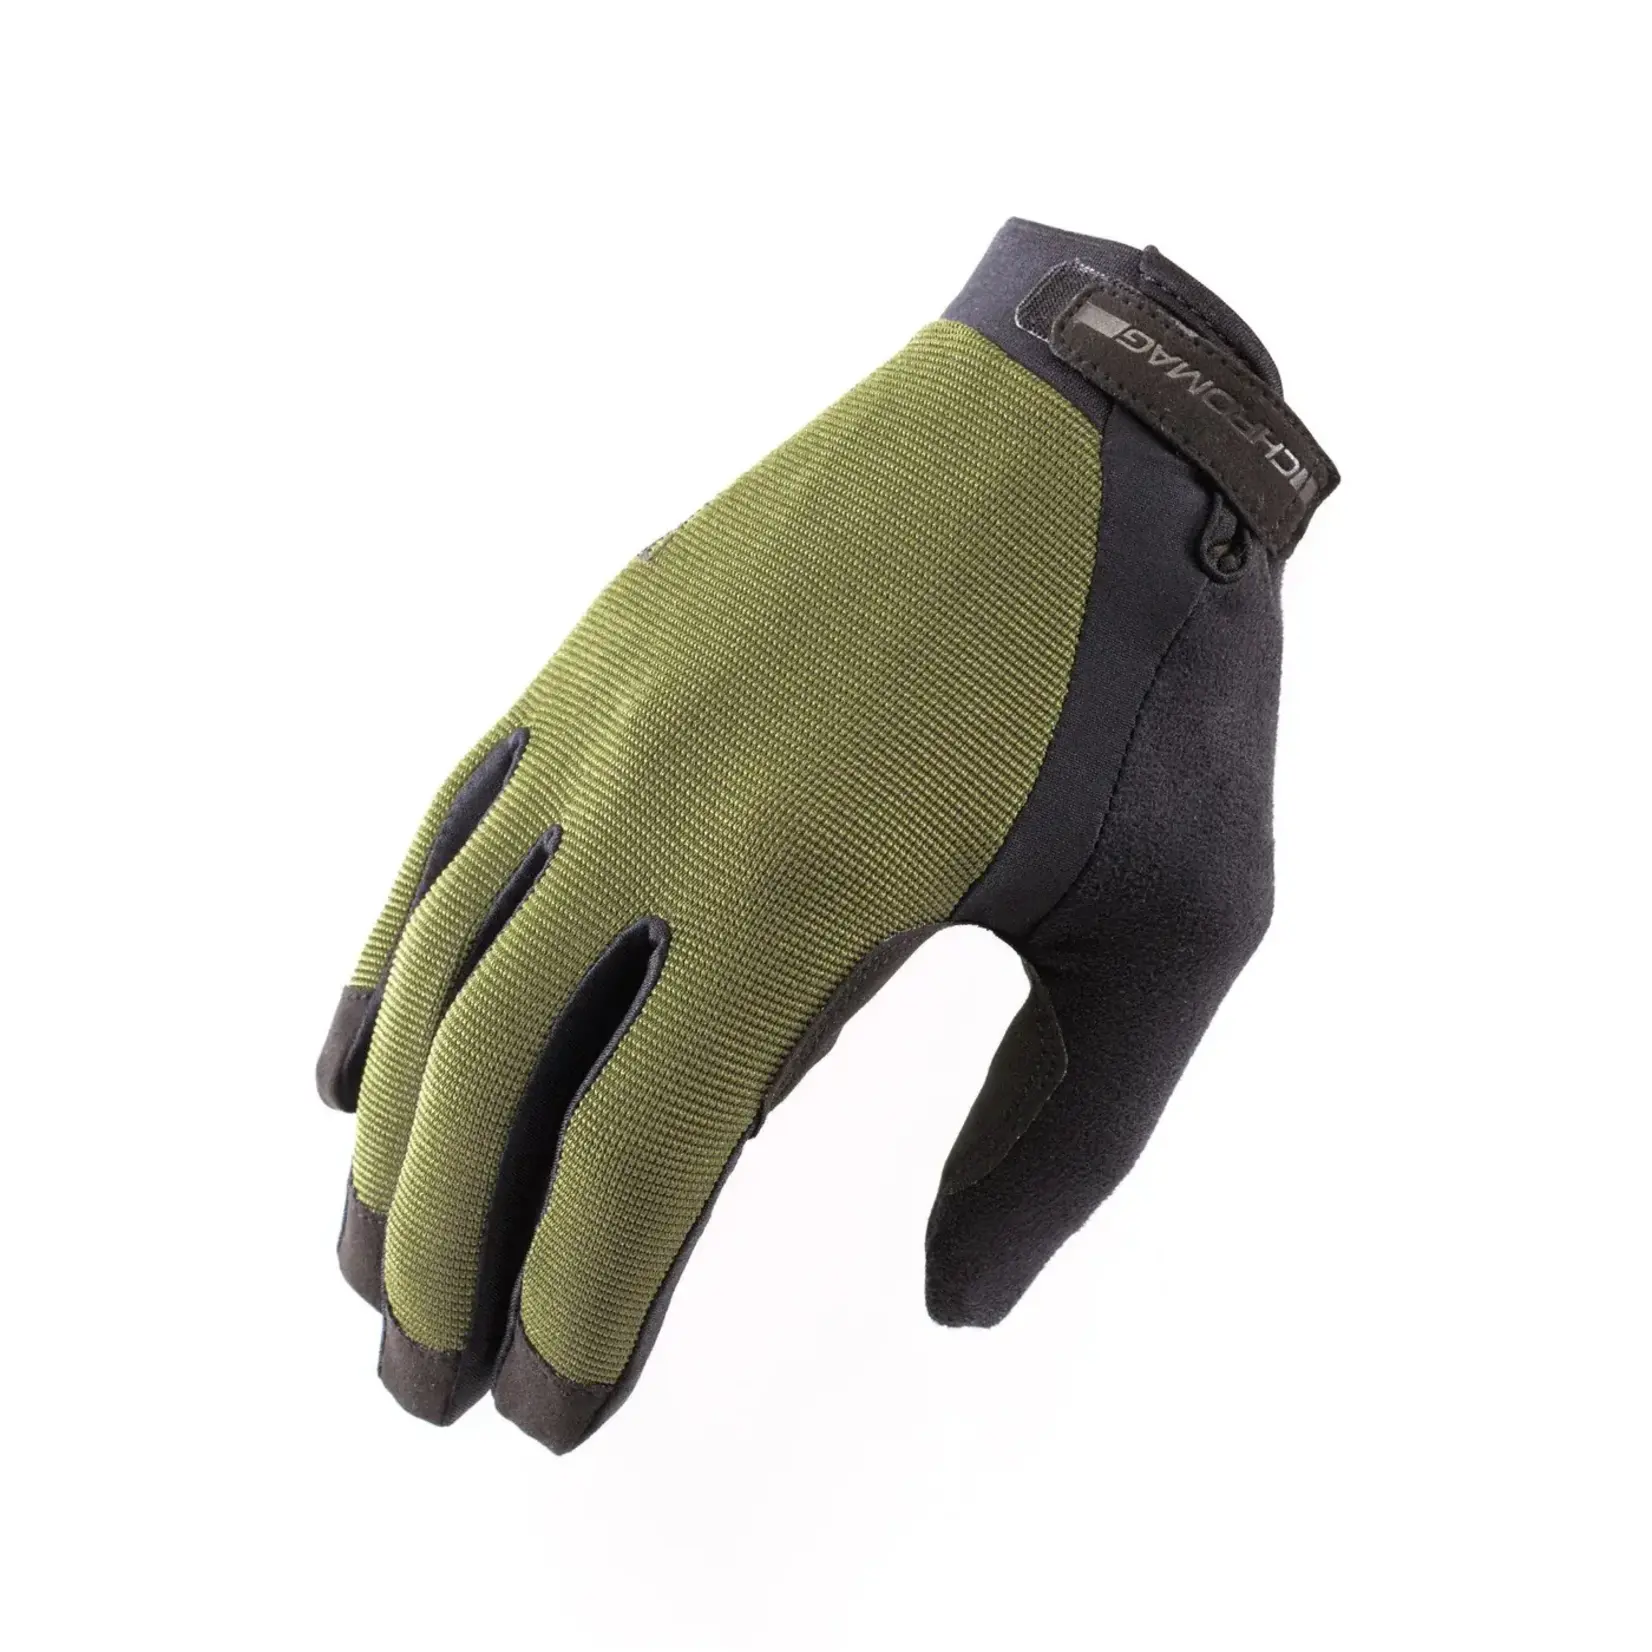 Chromag Chromag Tact Glove